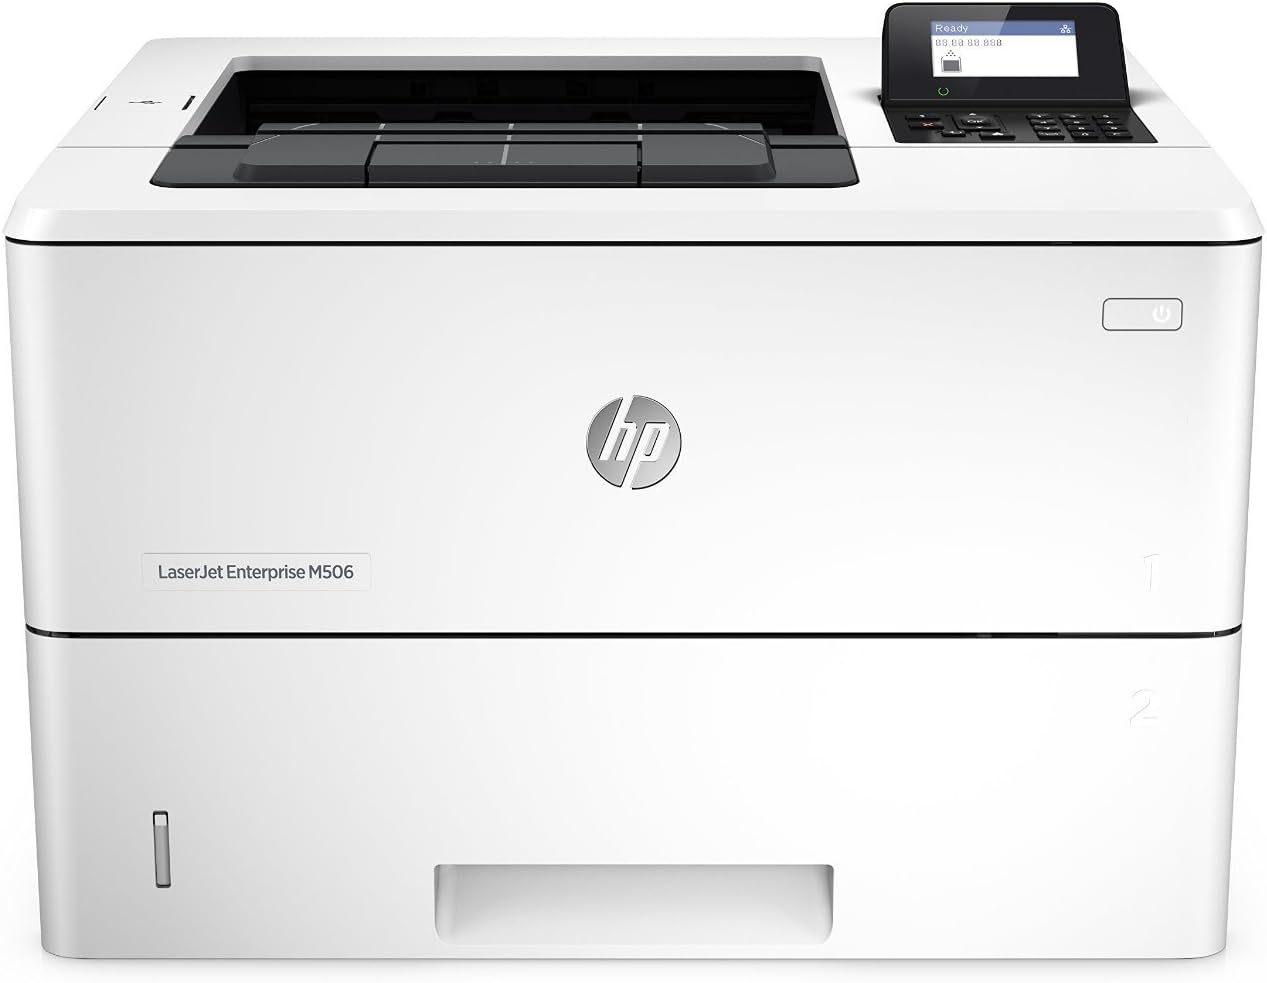 پرینتر استوک تک کاره لیزری سیاه و سفید اچ پی مدل HP LaserJet M506DN